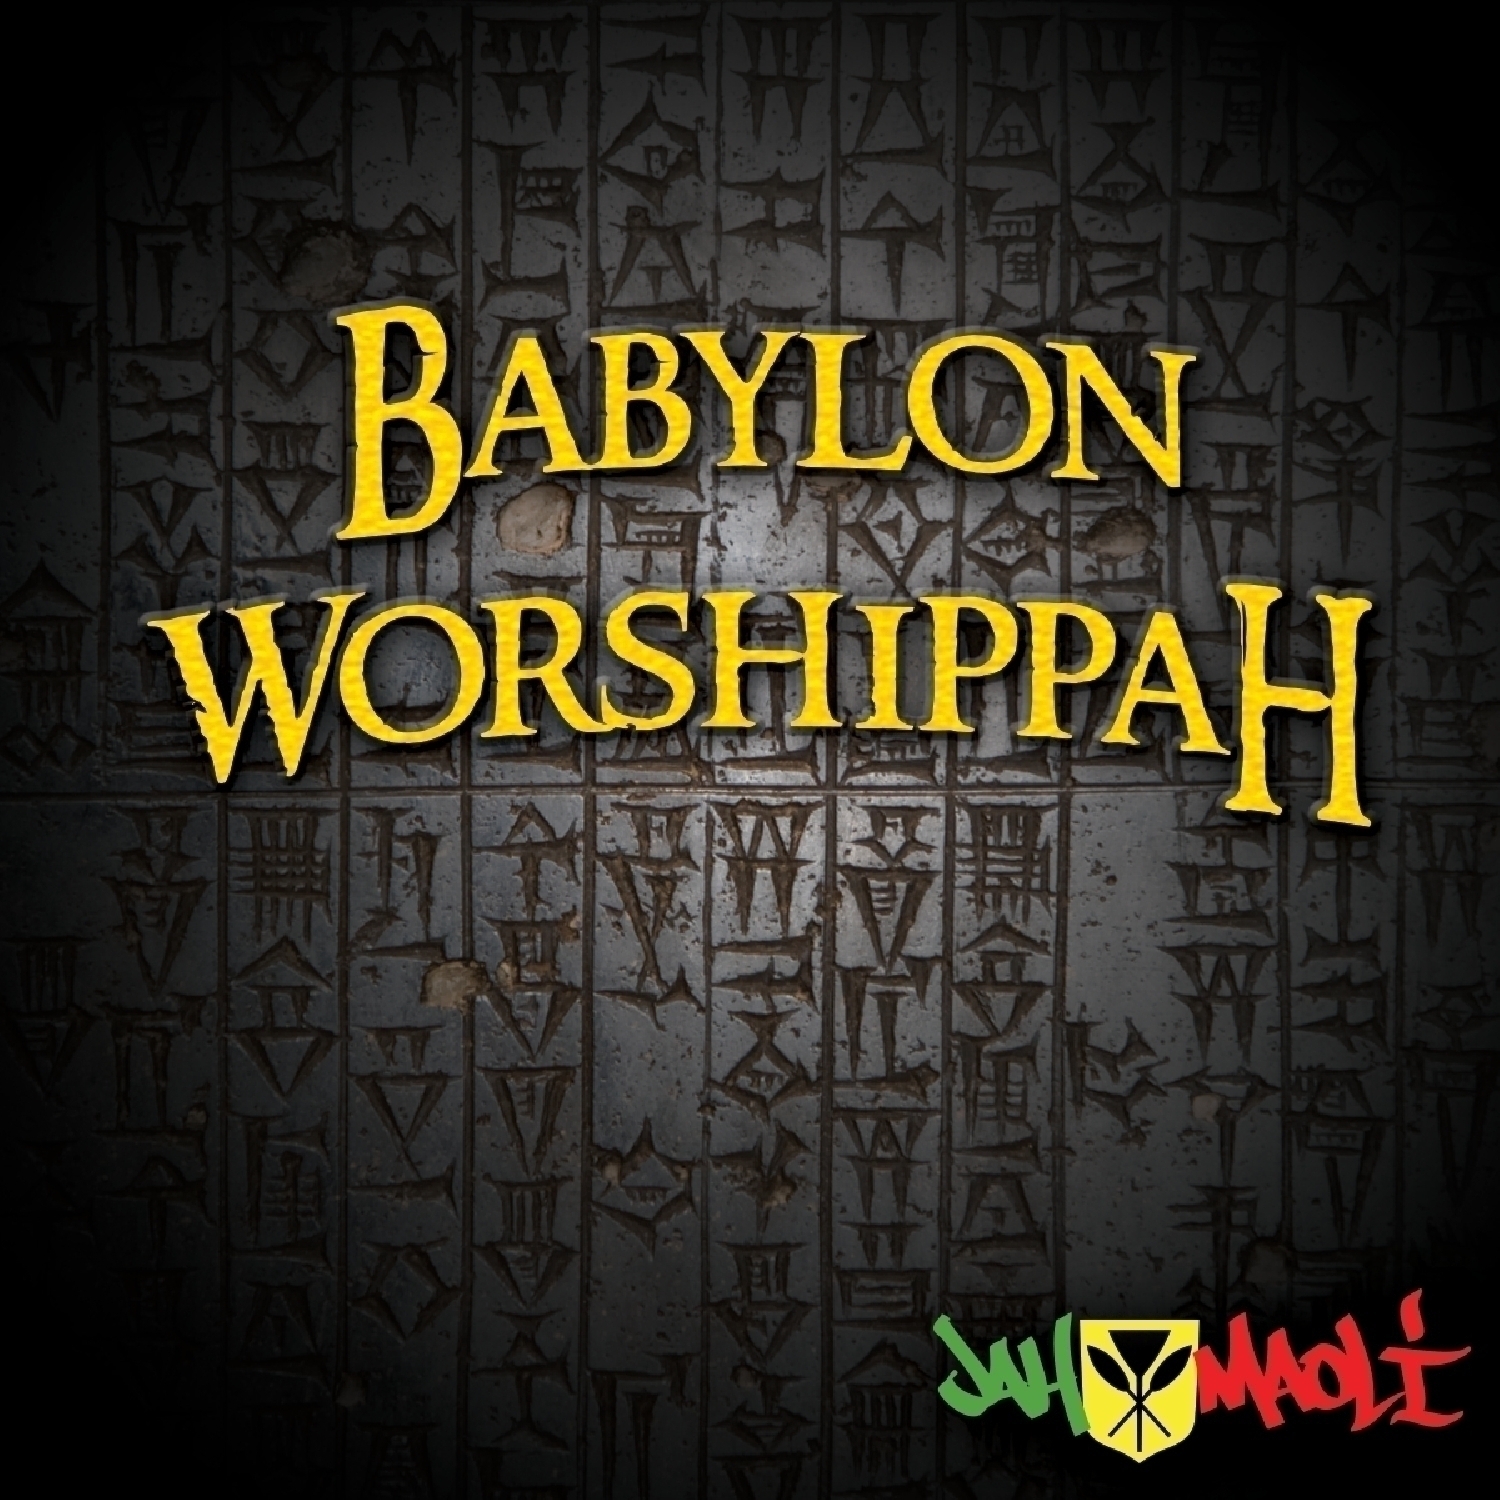 Babylon Worshippah